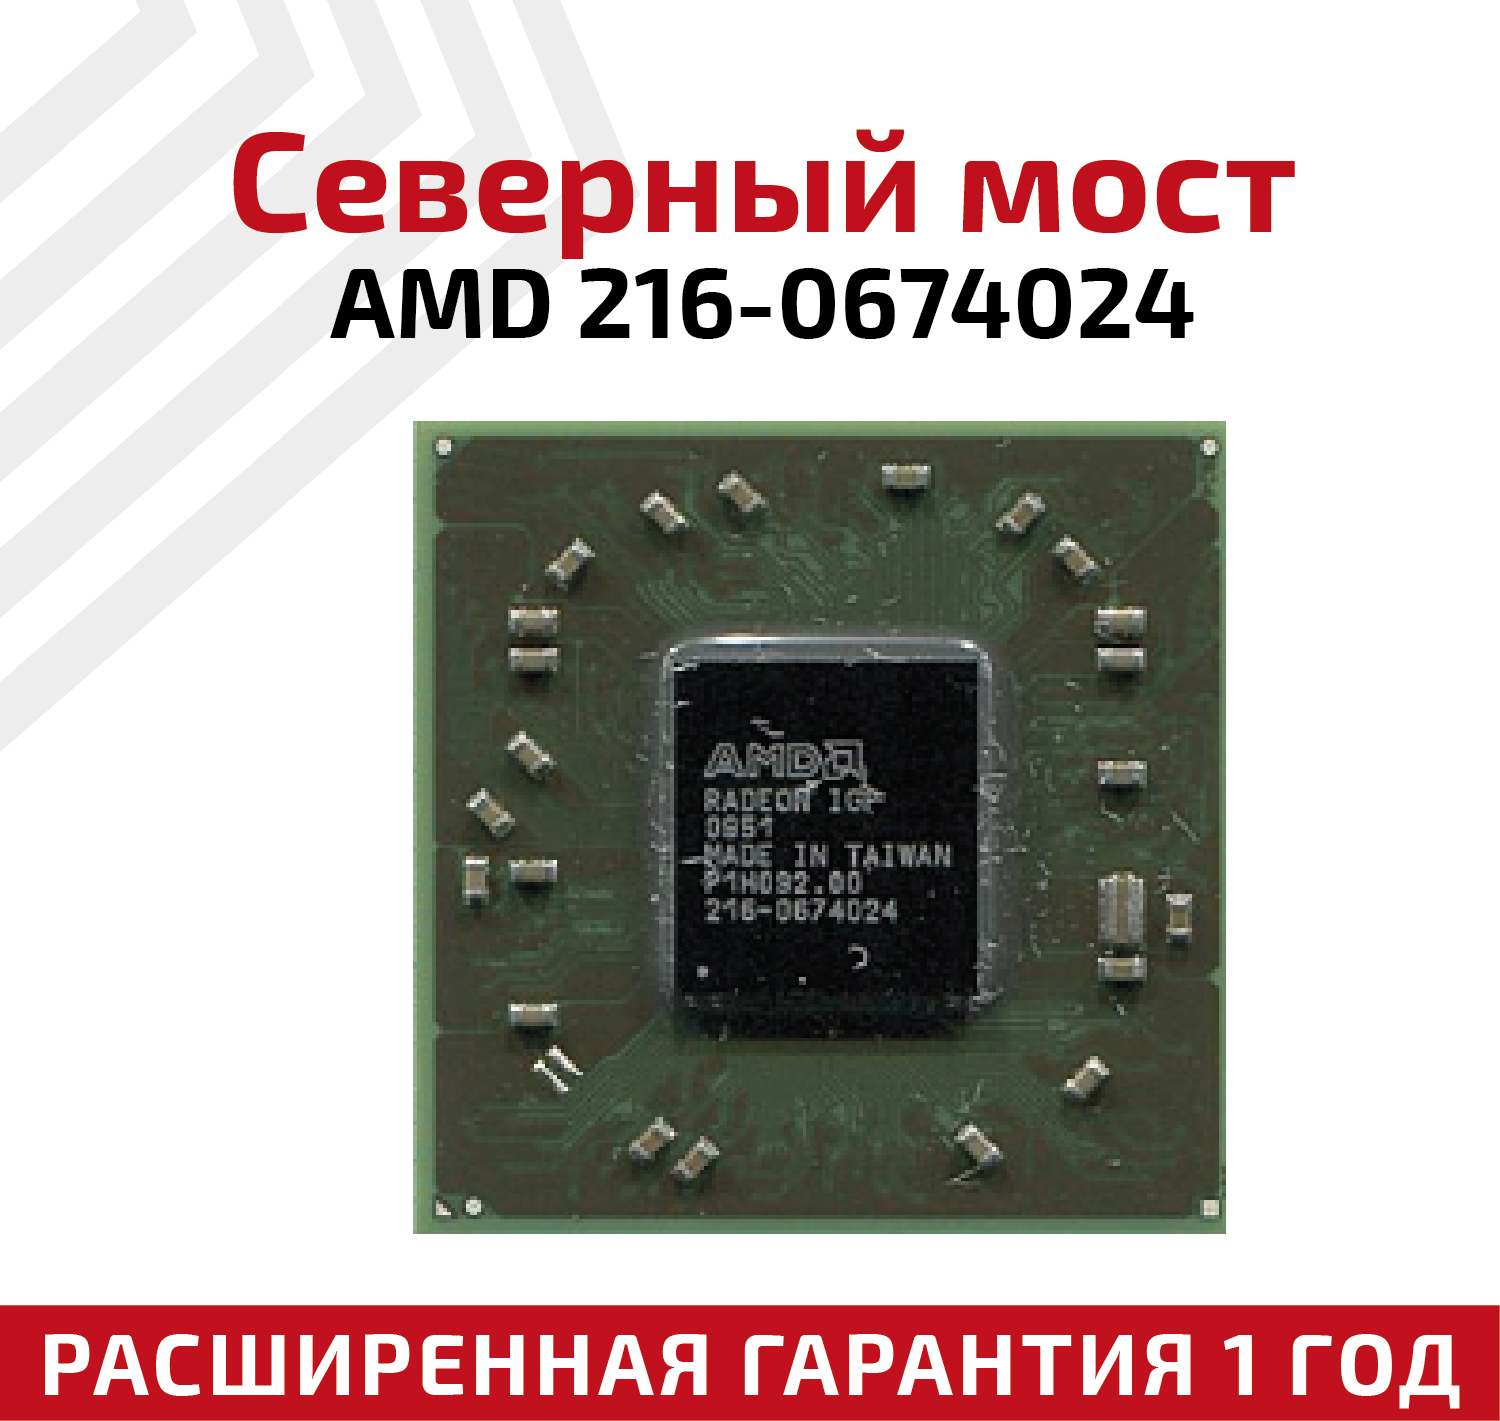 Северный мост AMD 216-0674024